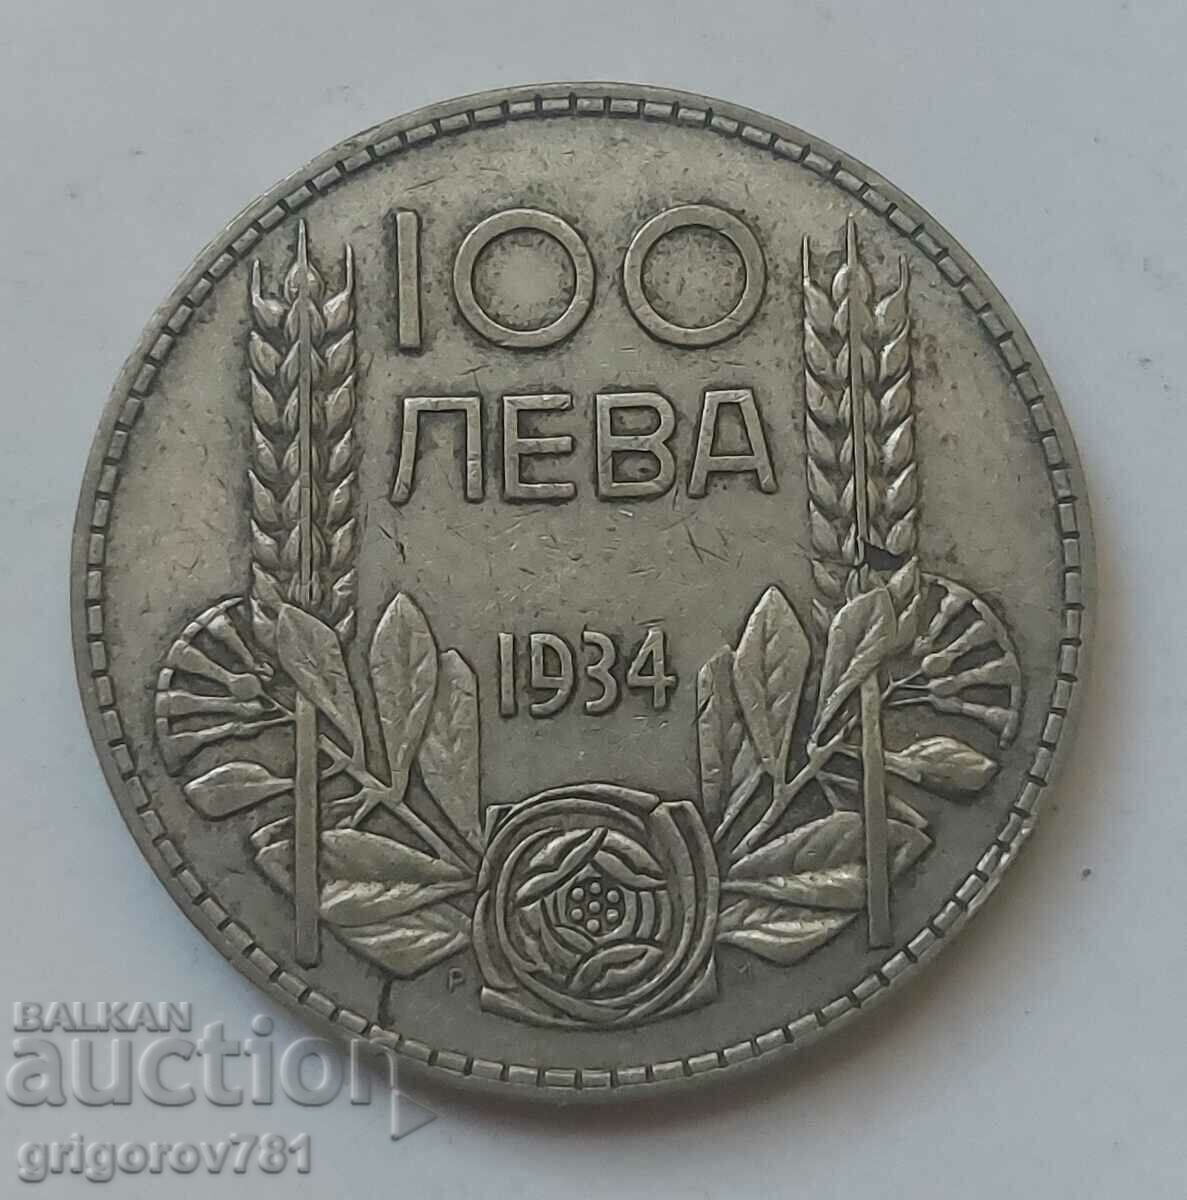 Ασήμι 100 λέβα Βουλγαρία 1934 - ασημένιο νόμισμα #75